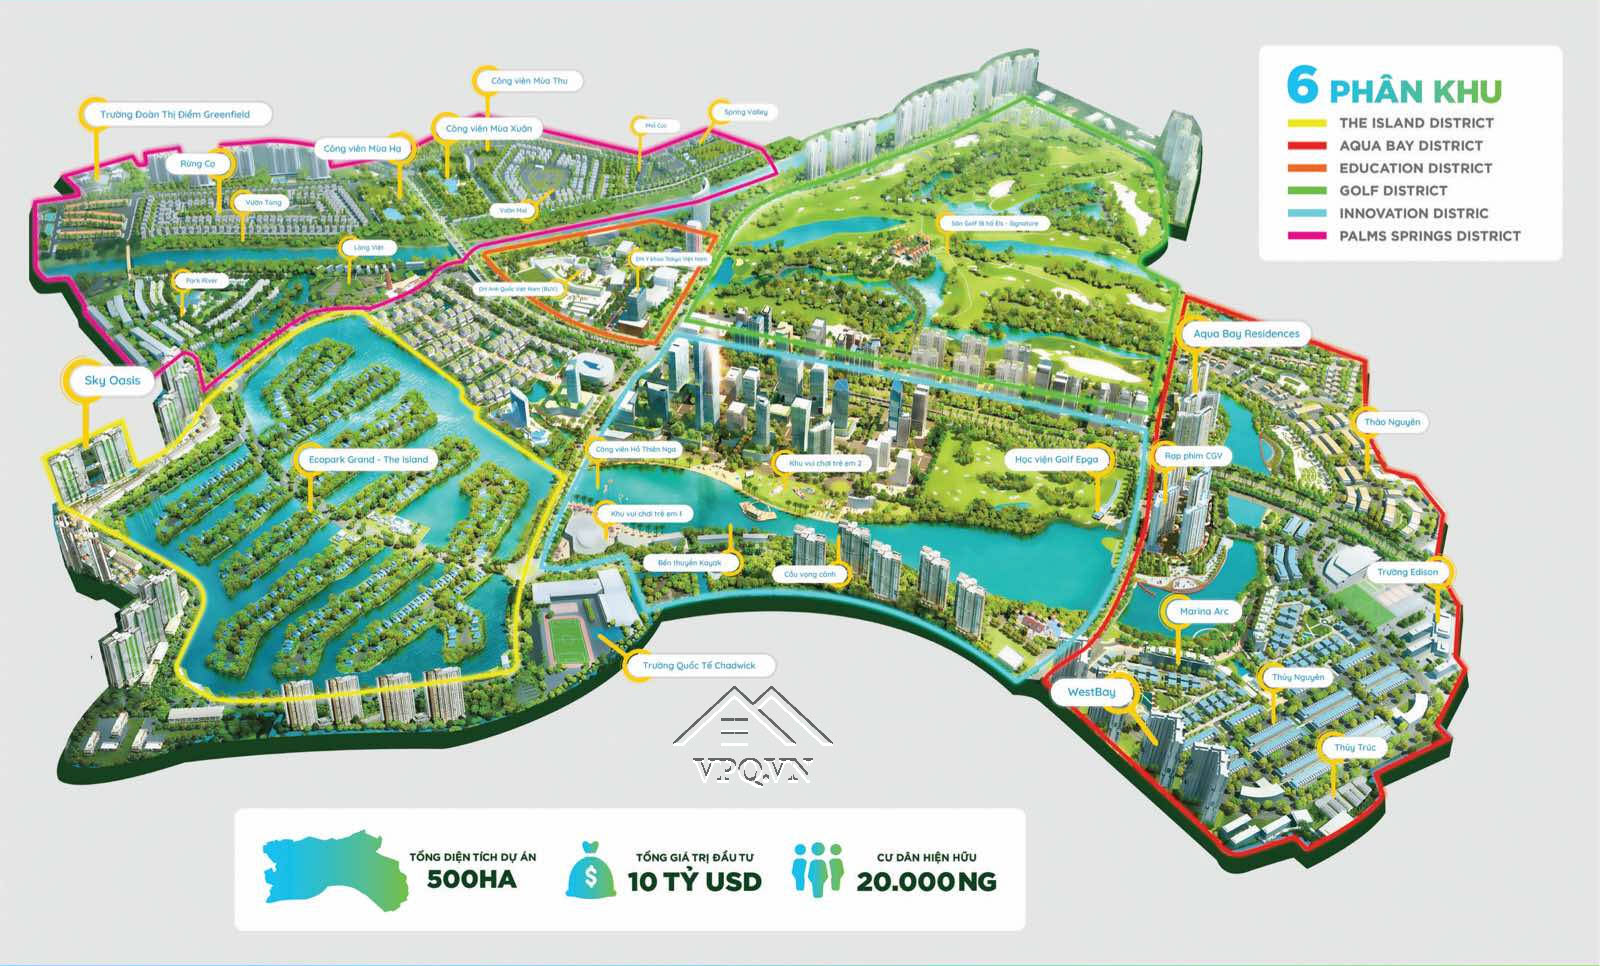 Tổng thể quy hoạch khu đô thị Ecopark